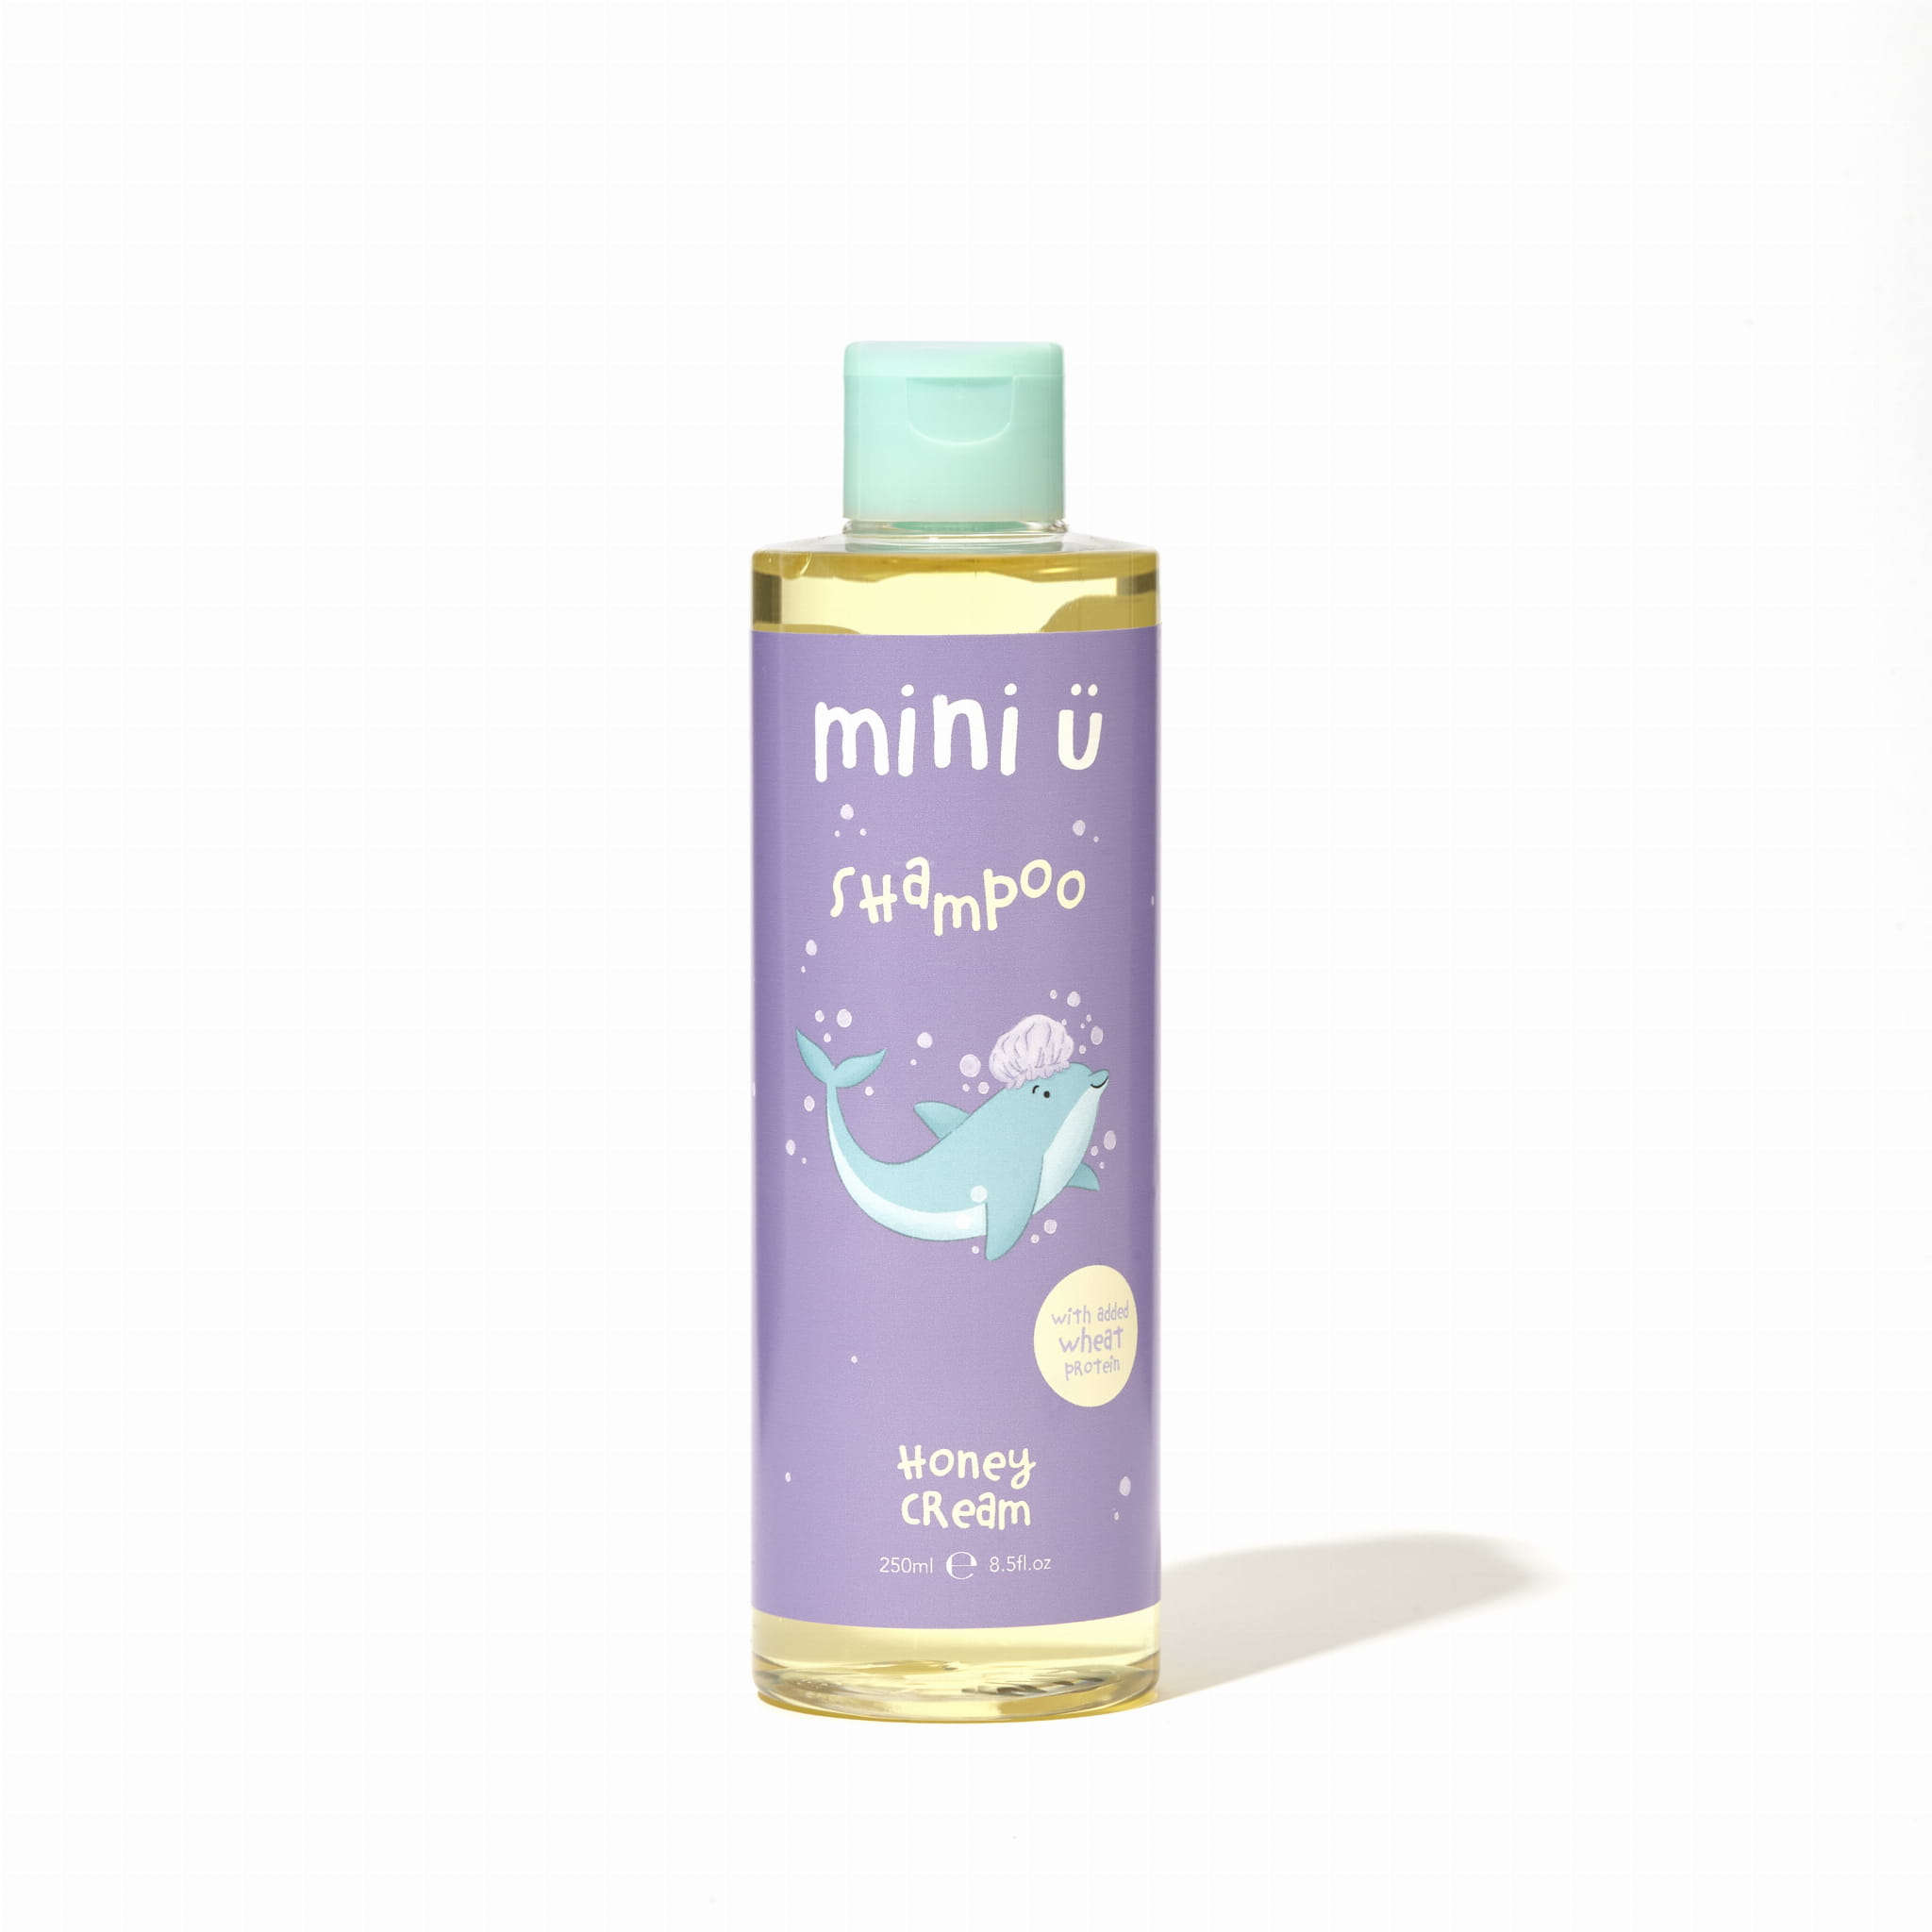 płyn i szampon dla noworodka naturalny